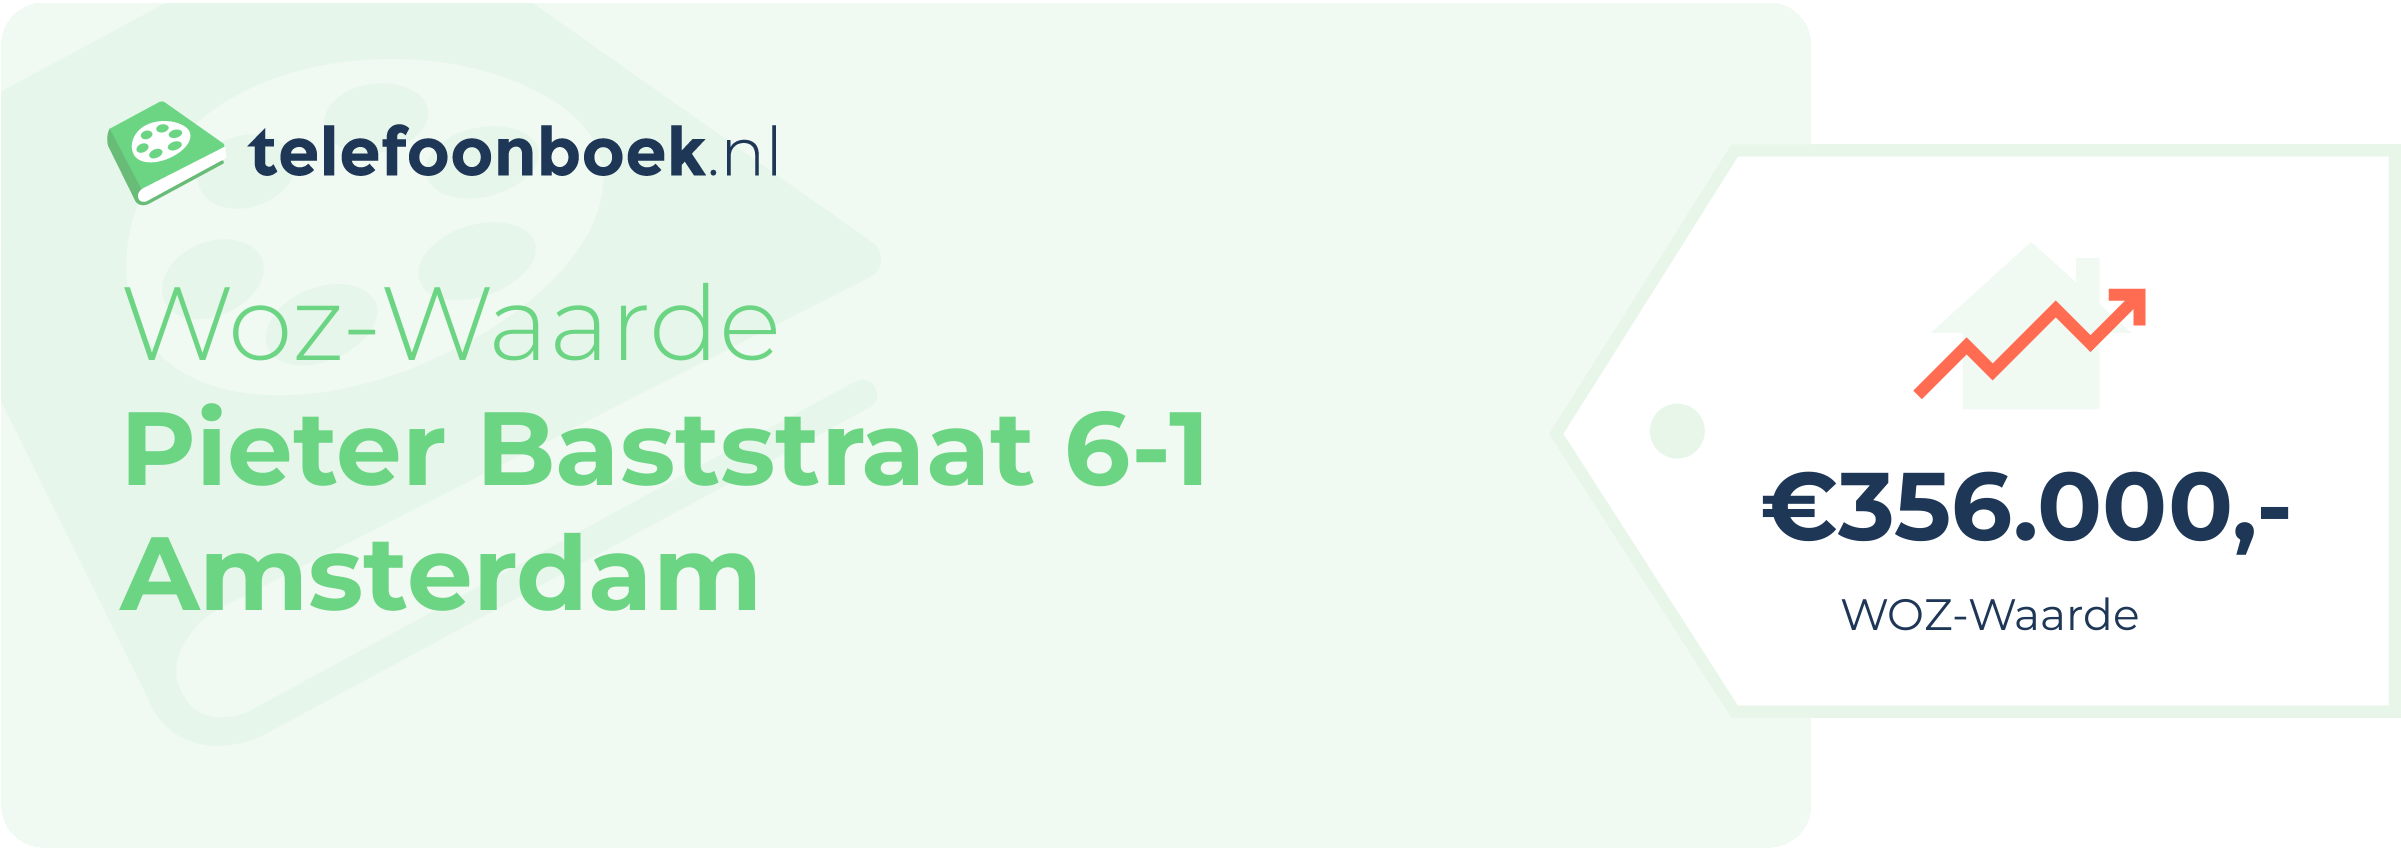 WOZ-waarde Pieter Baststraat 6-1 Amsterdam